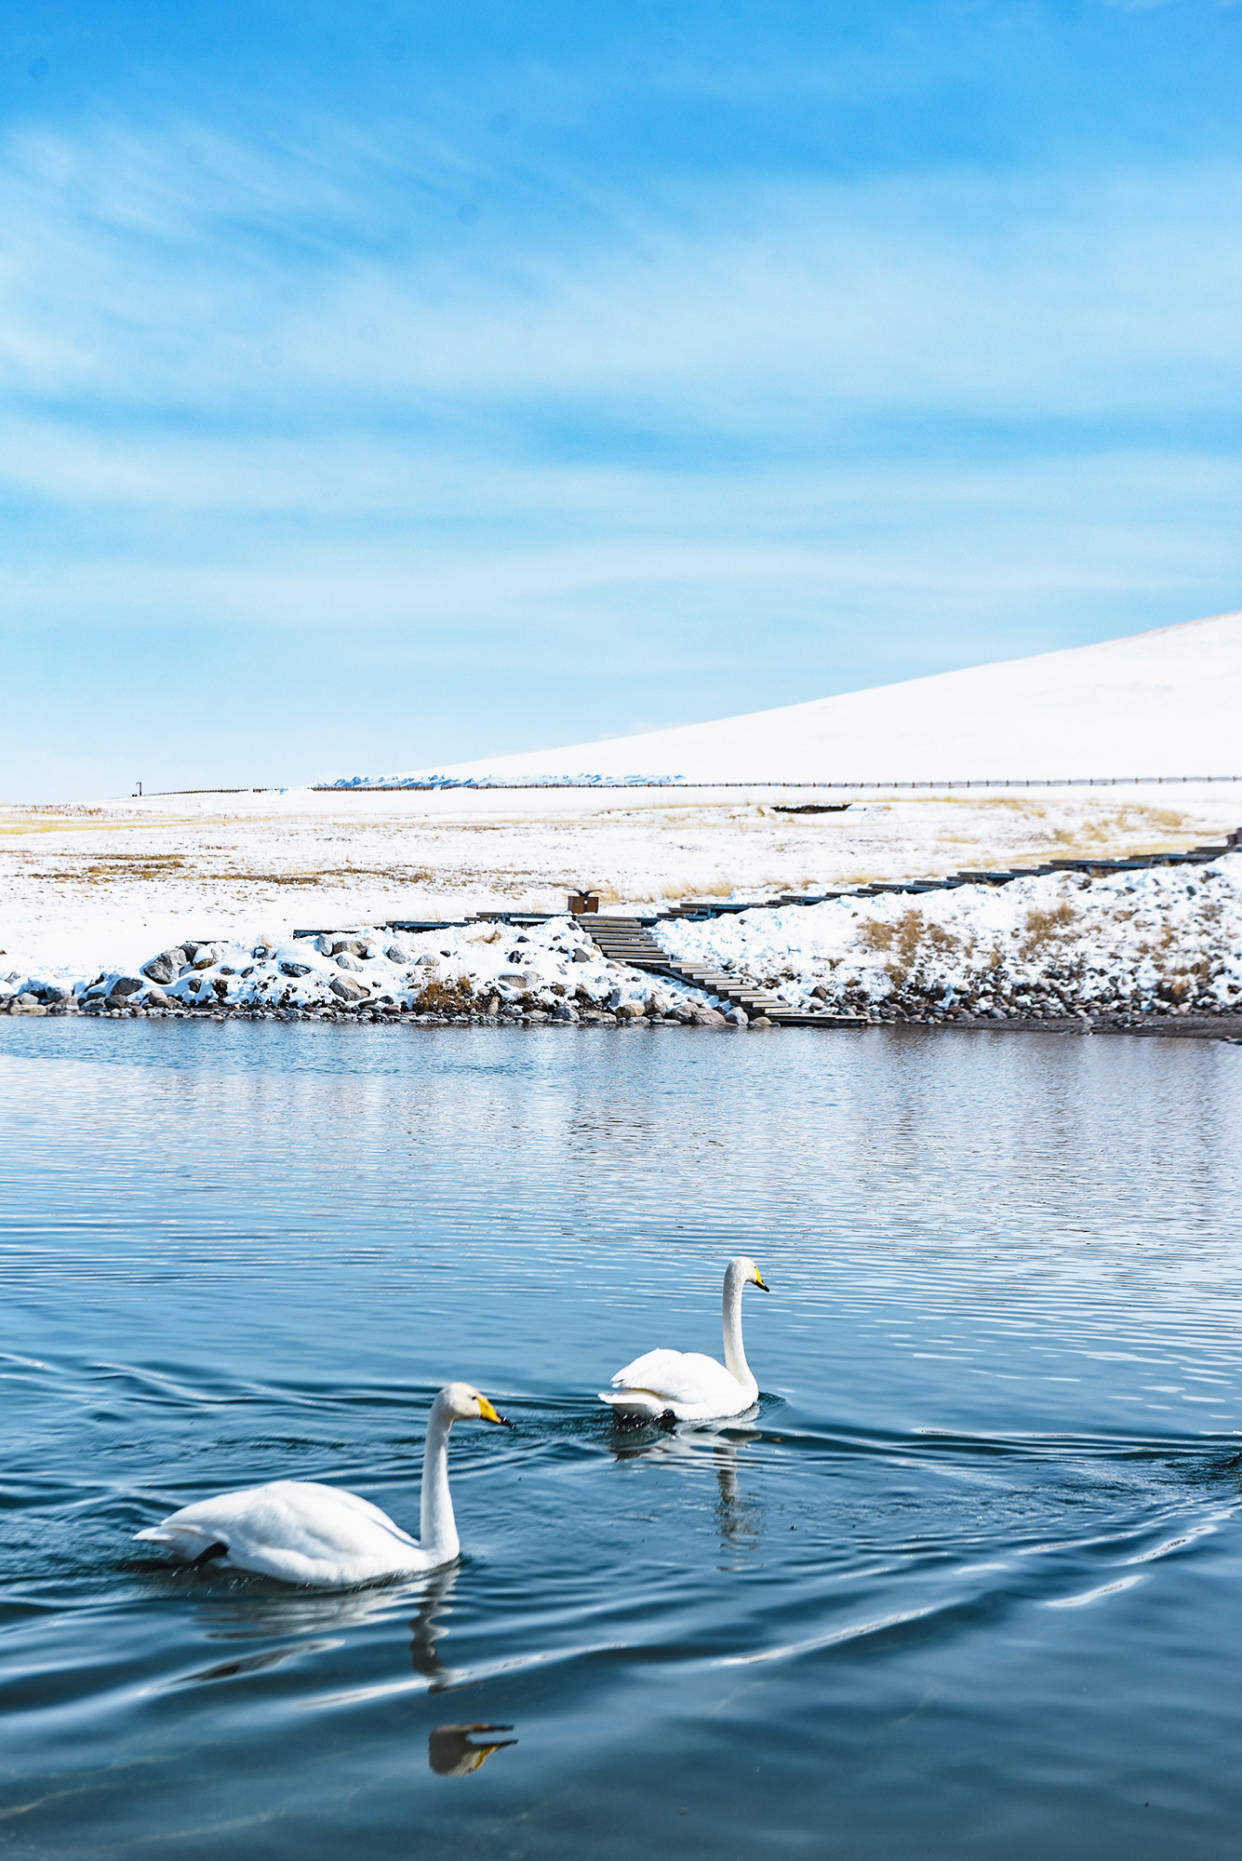 往西伯利亚的天鹅飞走了，赛里木湖下了一场雪，天鹅又调头回来了